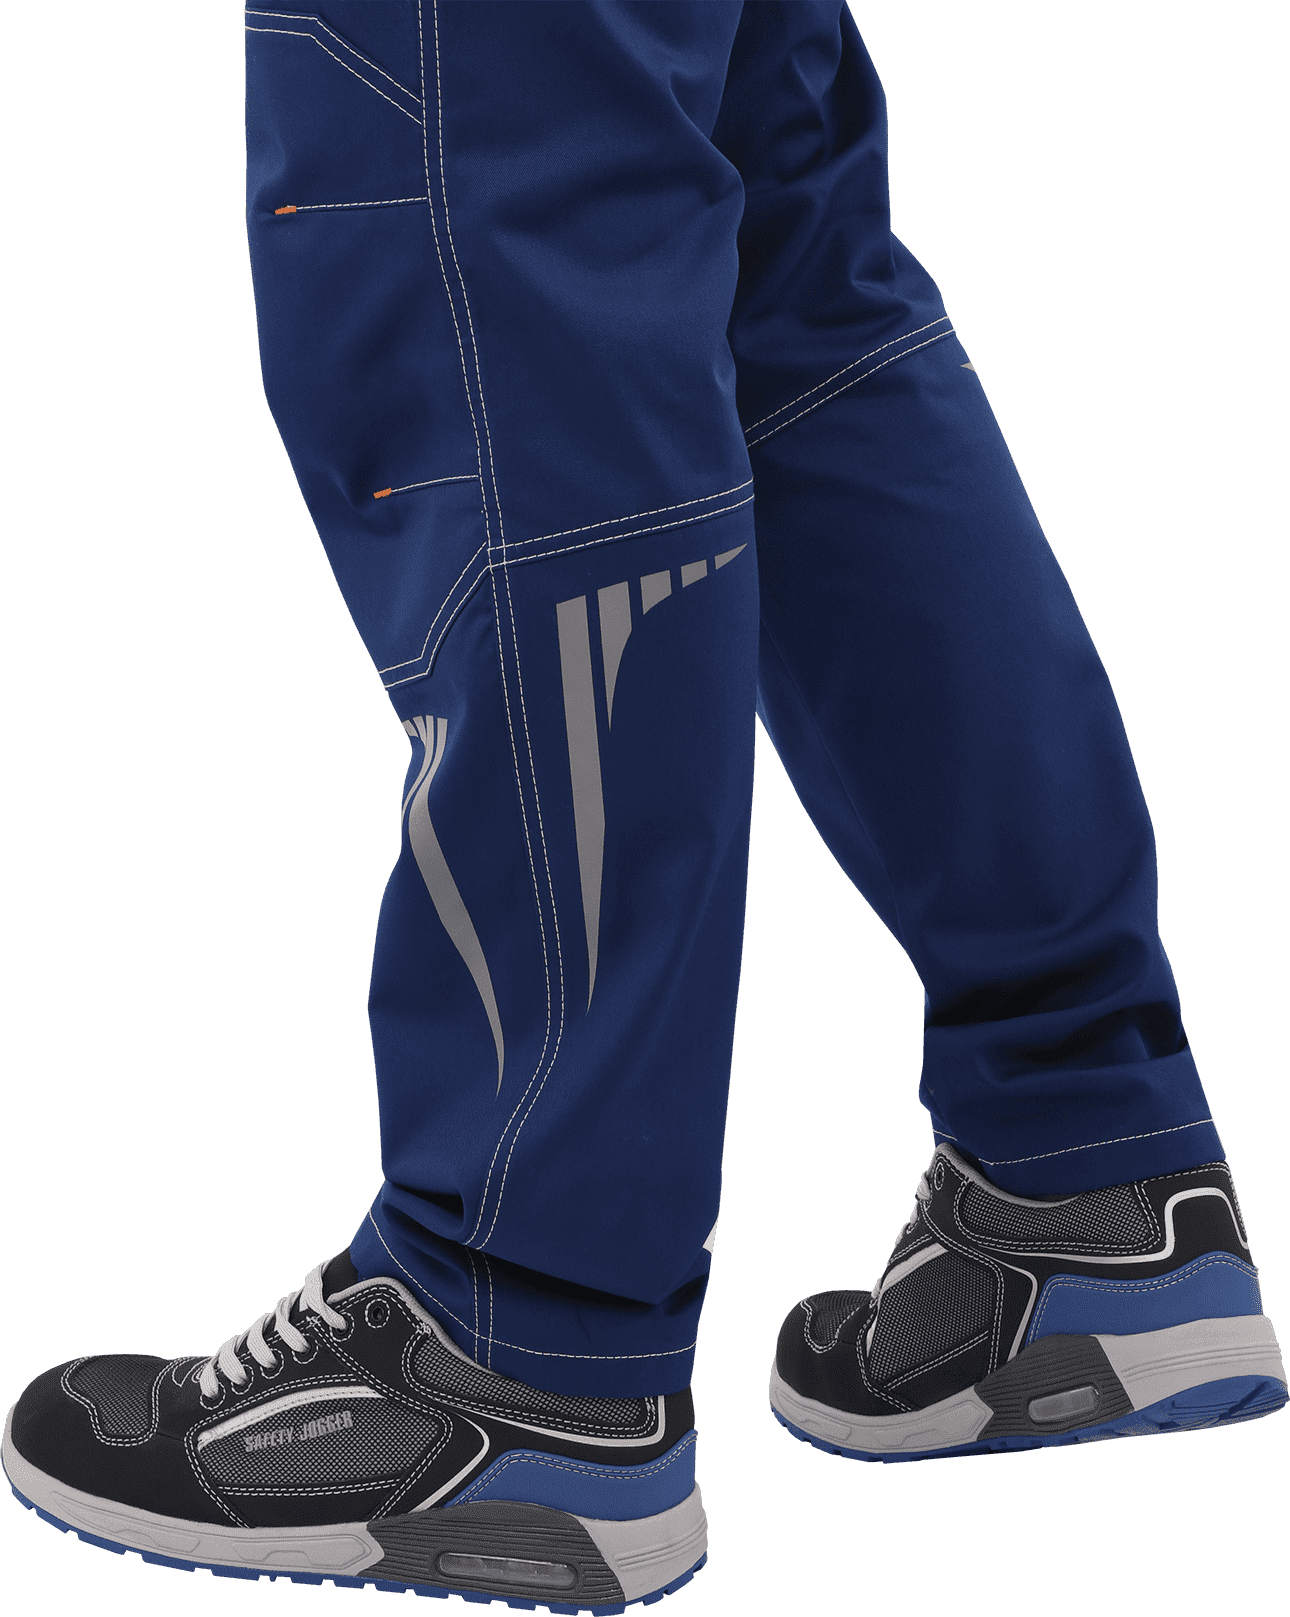 Летние брюки рабочие ПЕРФЕКТ синие мужские